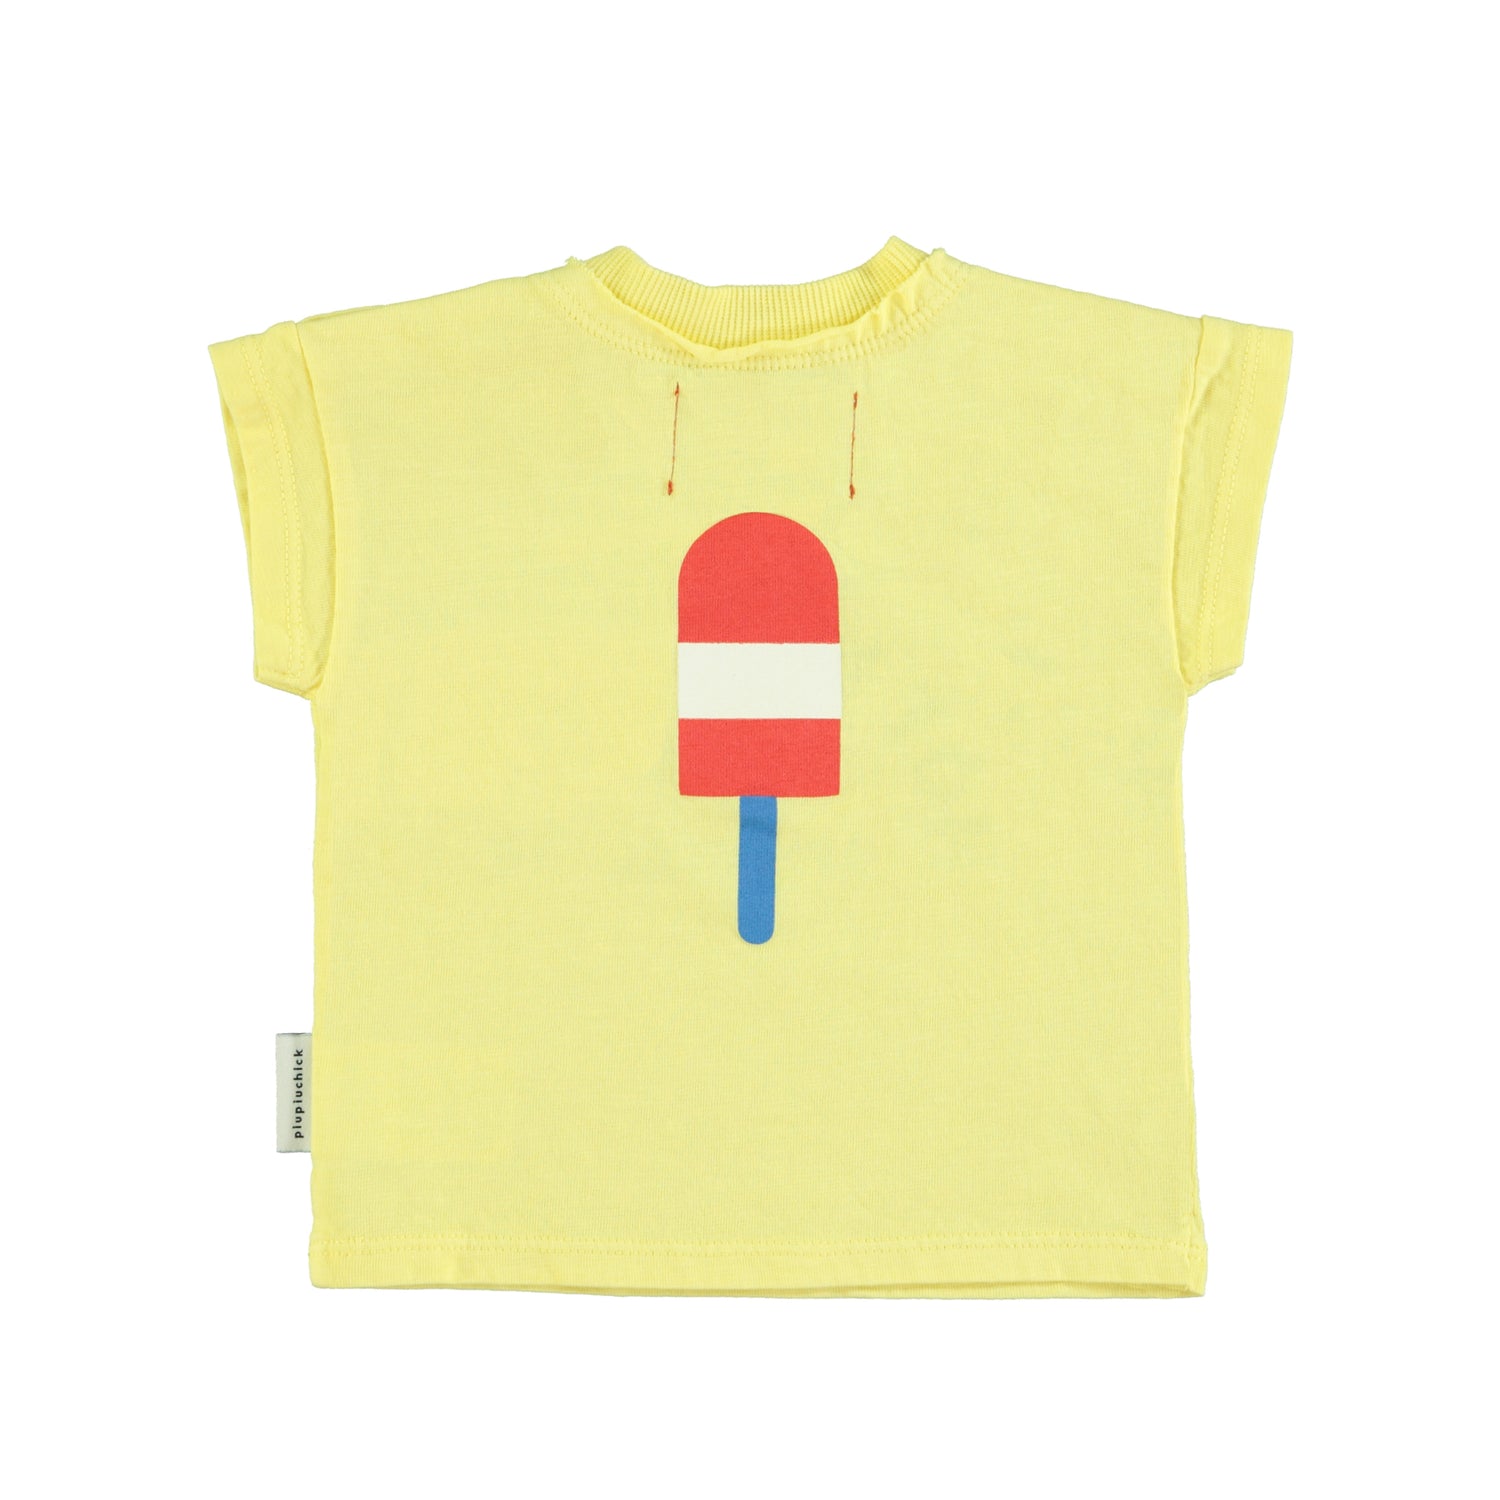 Piupiuchick Yellow with Ice Cream Graphic Tee Shirt